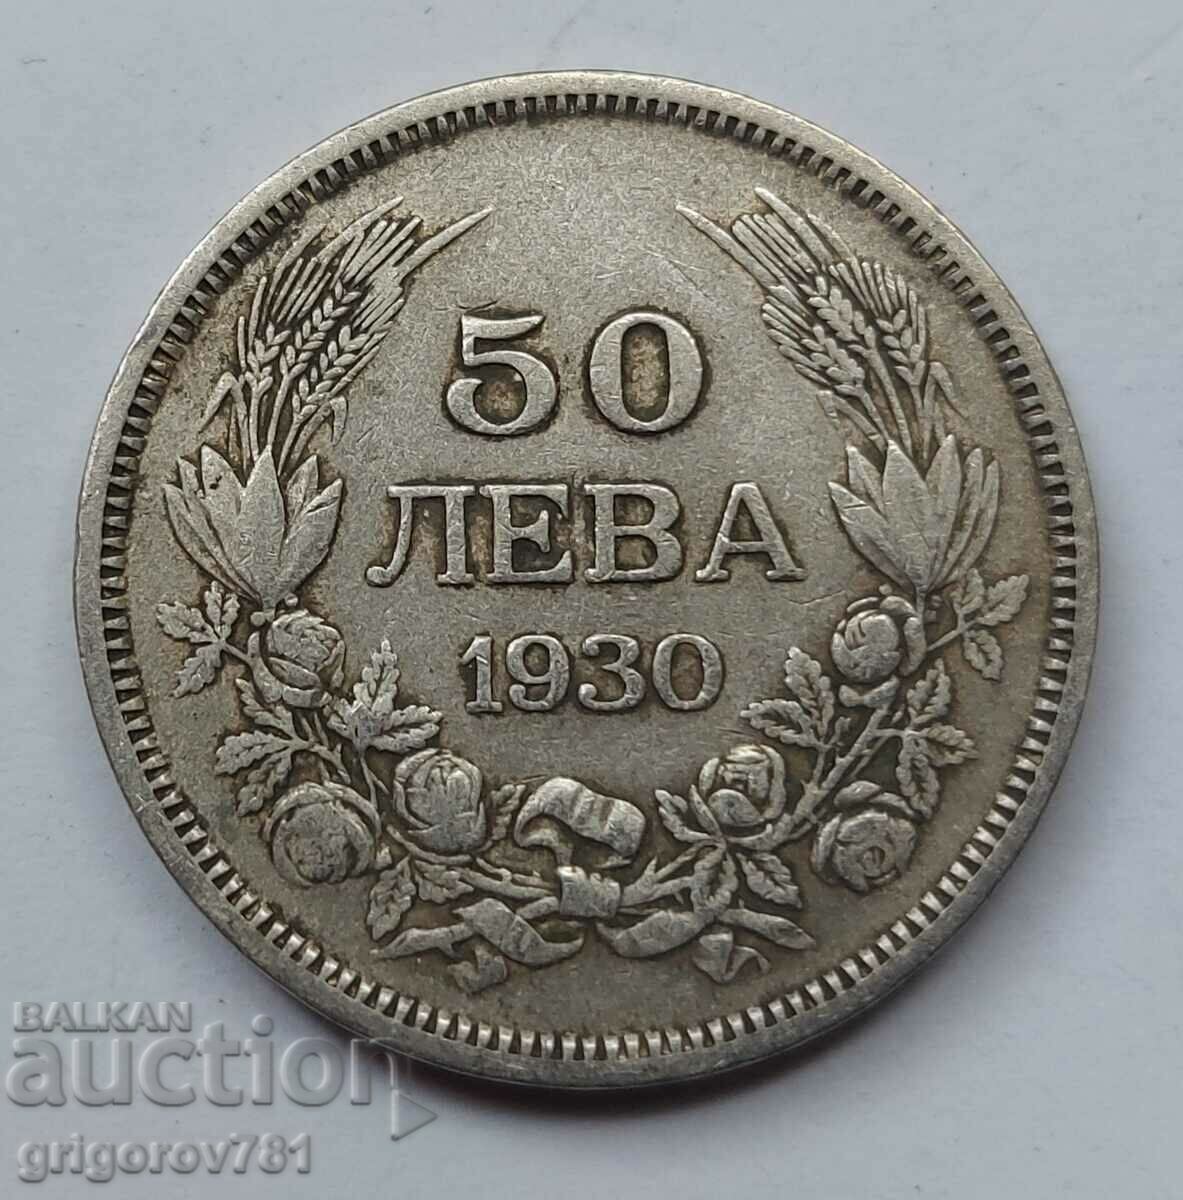 Ασήμι 50 λέβα Βουλγαρία 1930 - ασημένιο νόμισμα #69